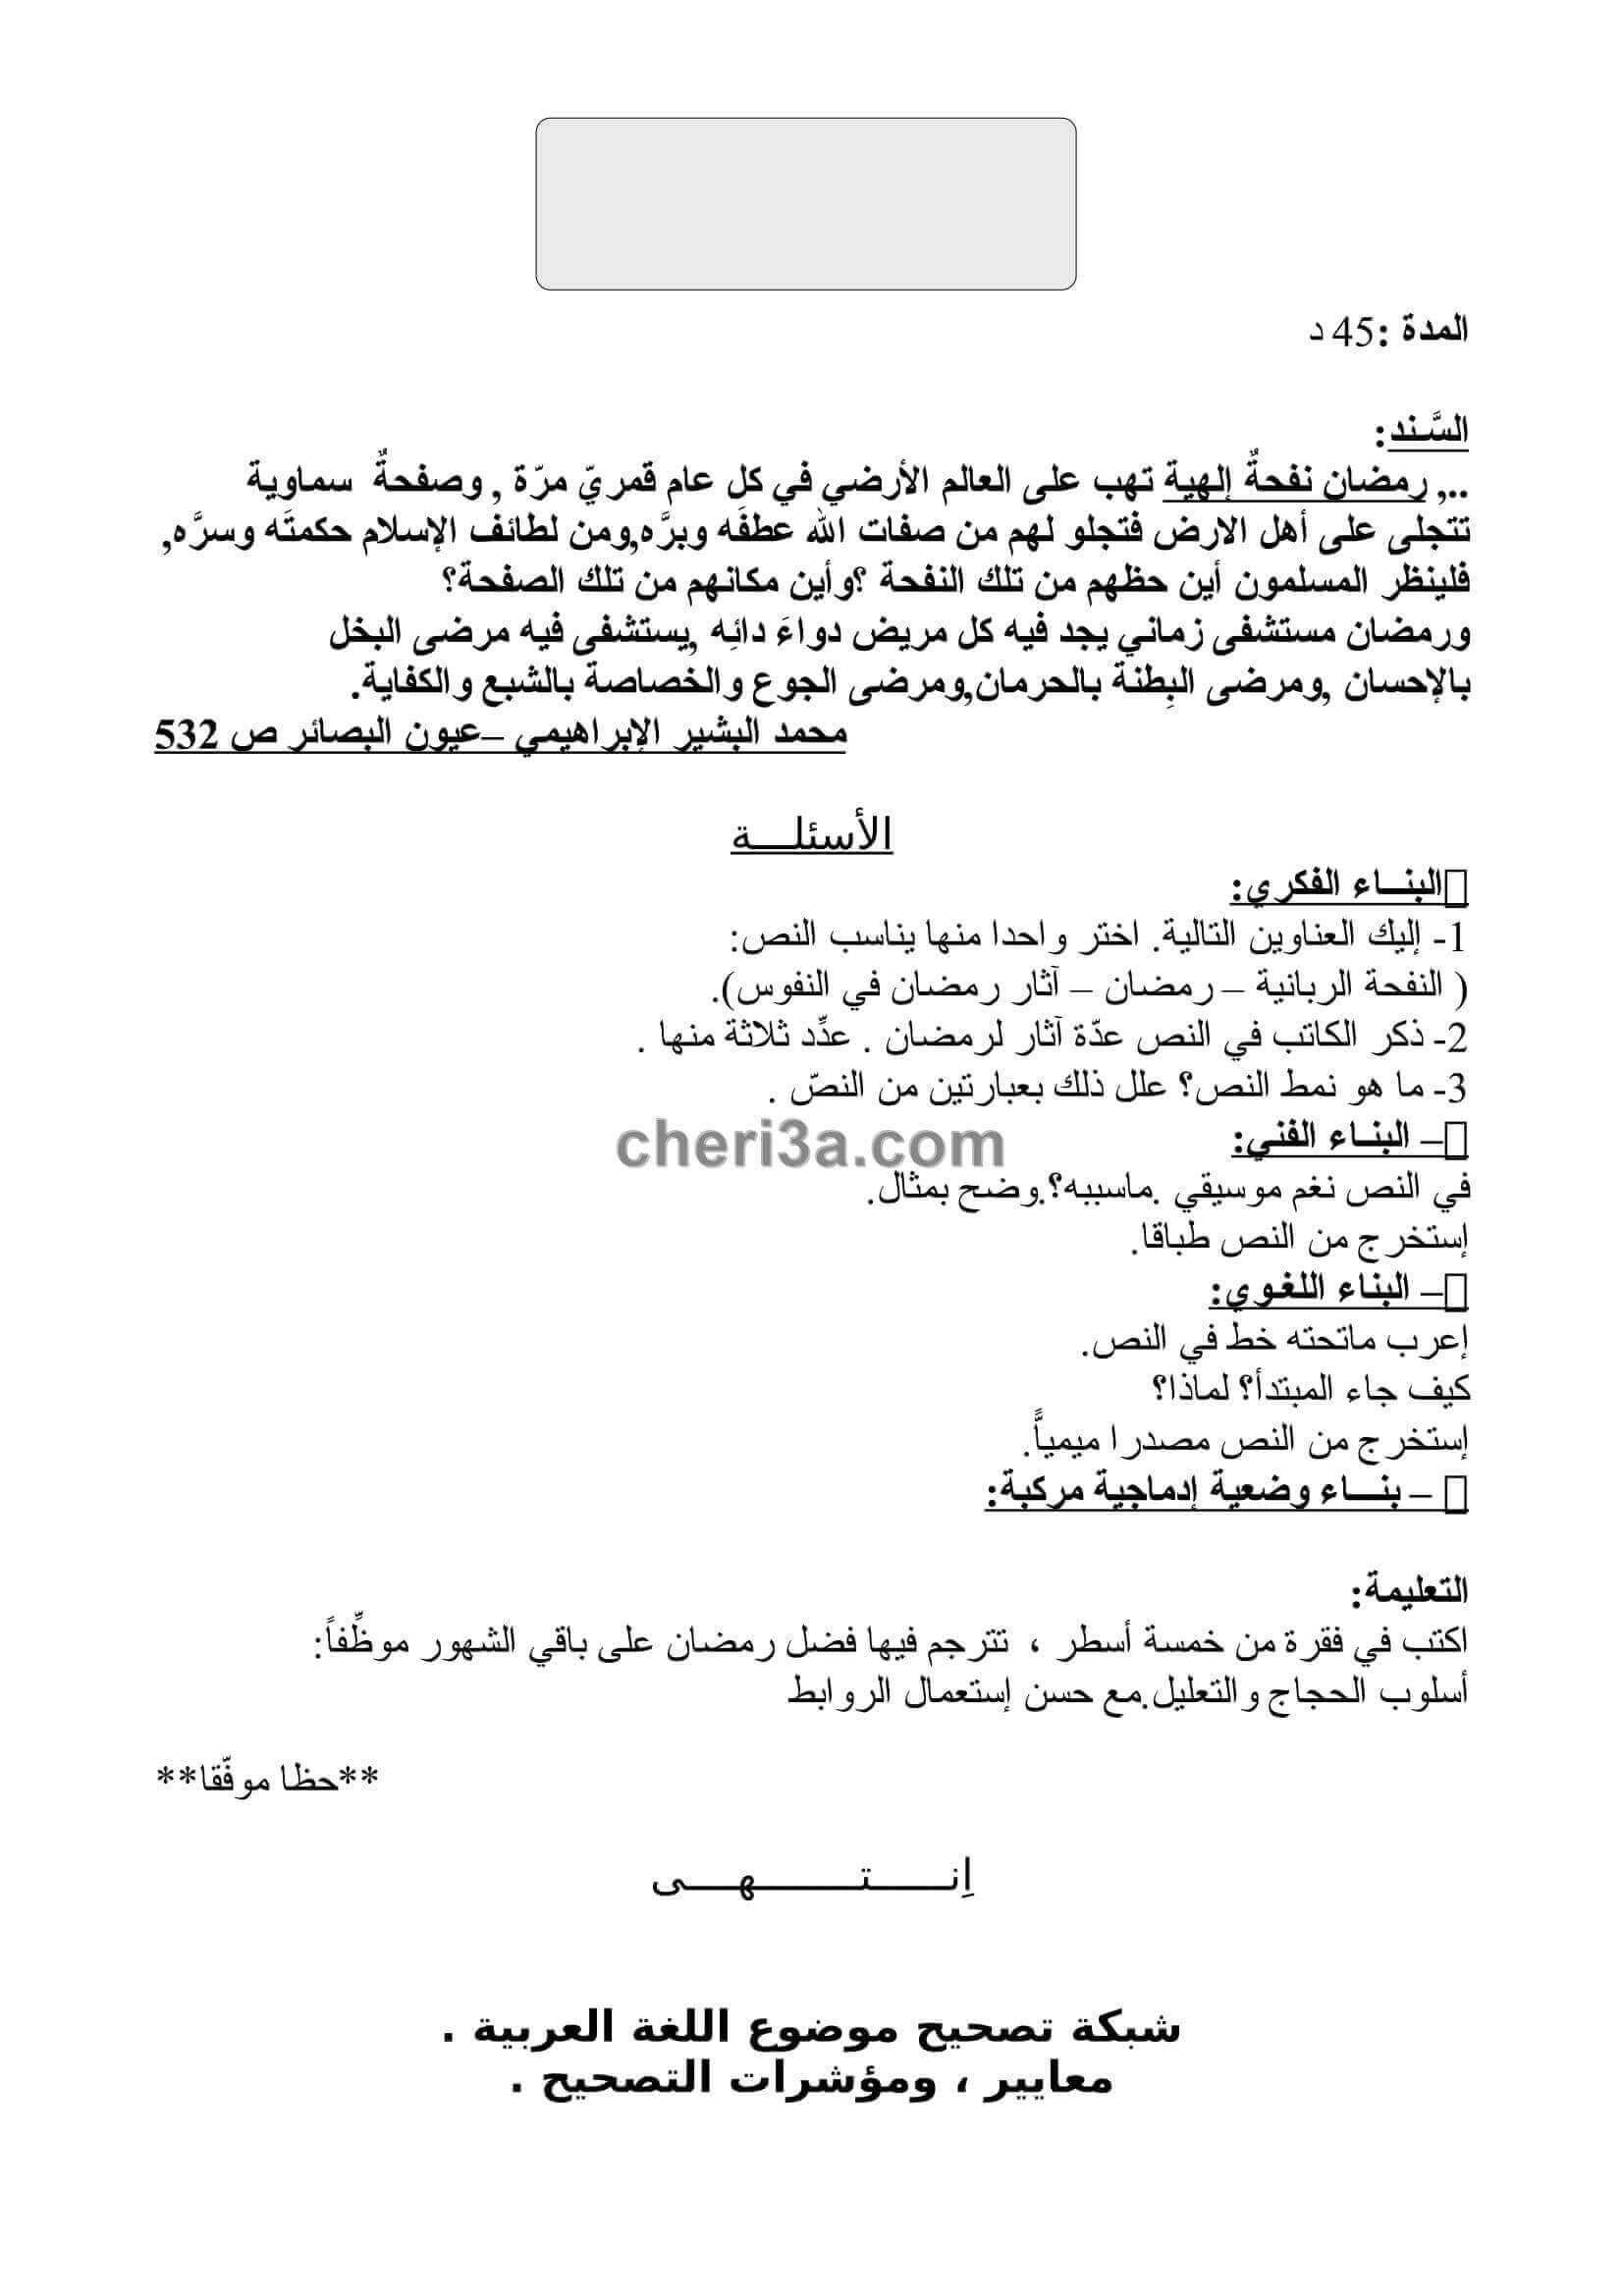 اختبار الفصل الاول للسنة الثالثة متوسط في اللغة العربية 